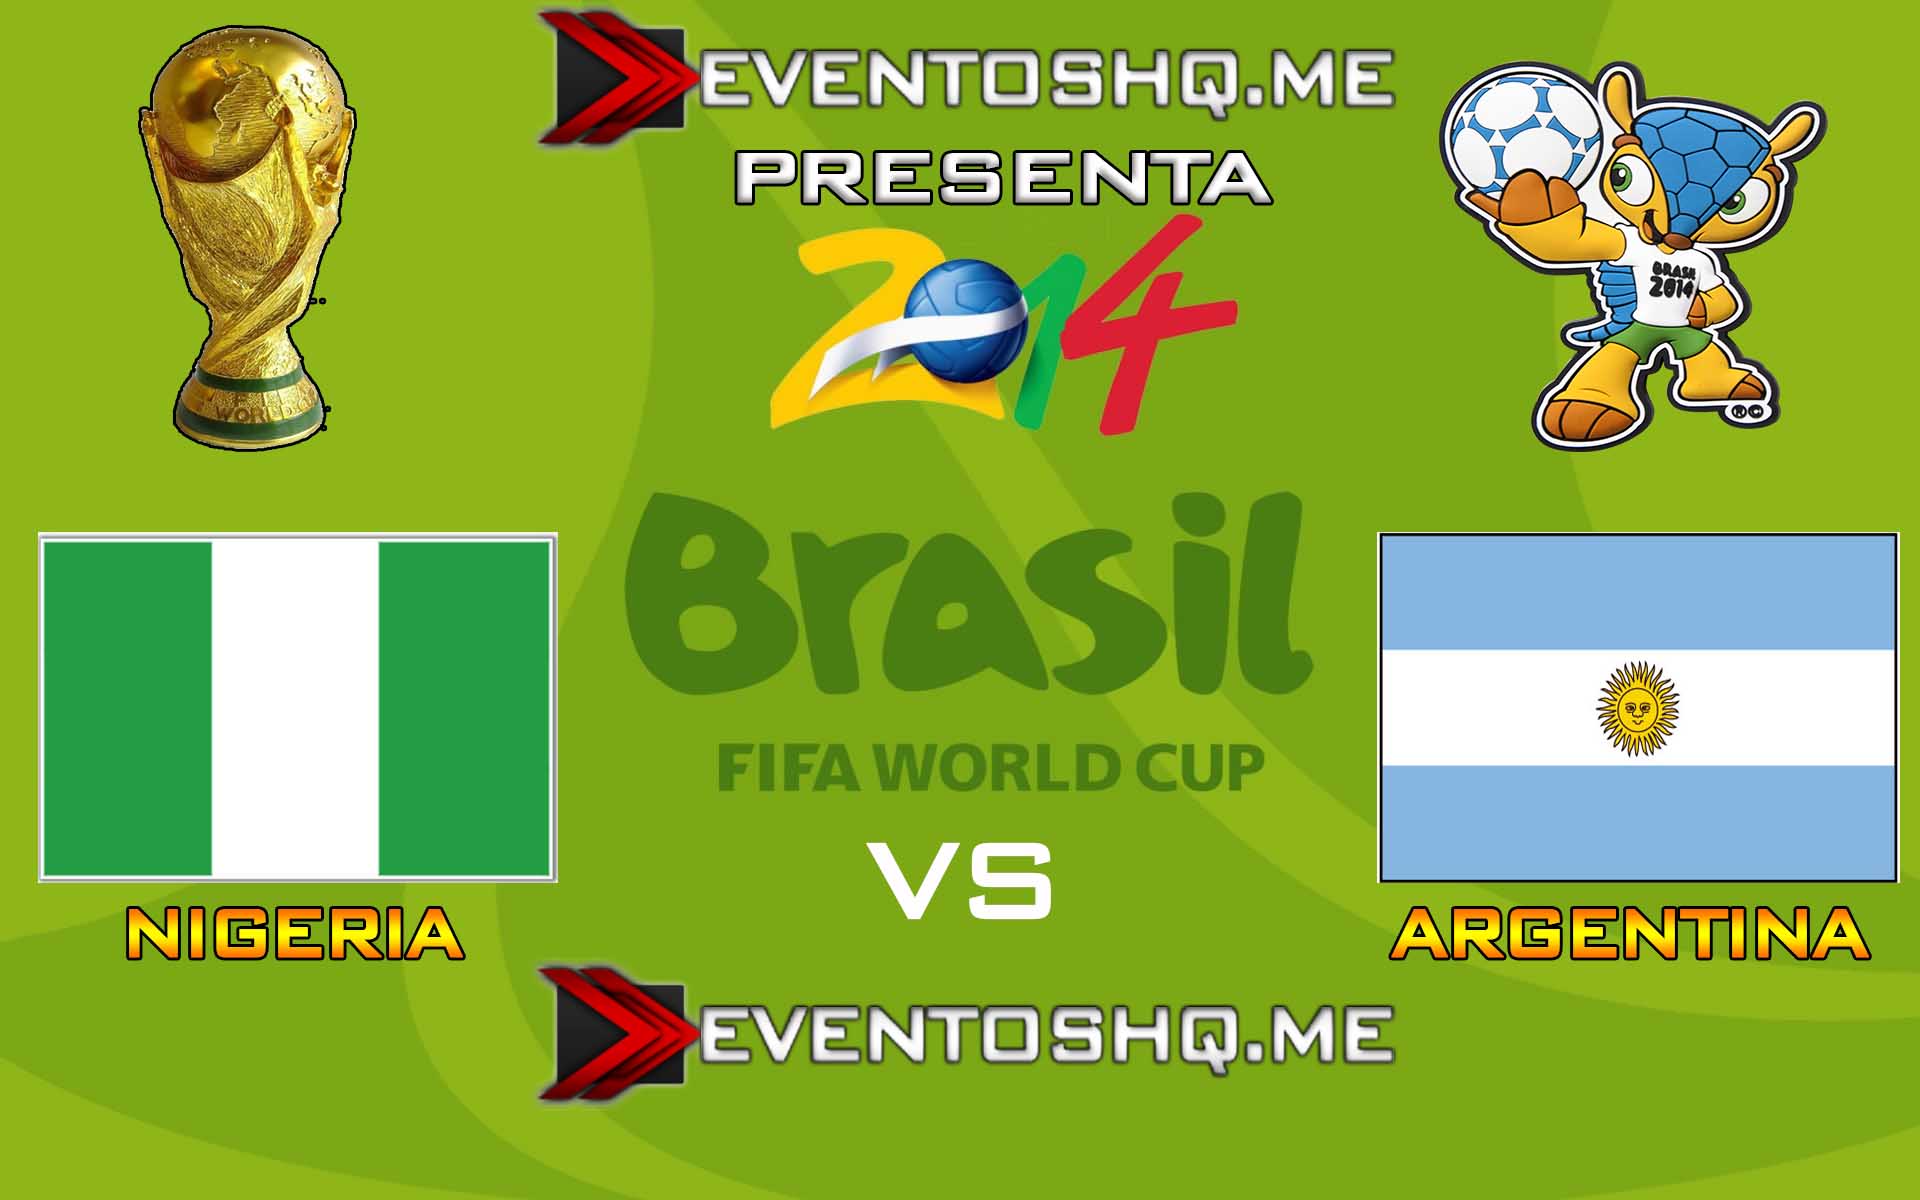 Ver en Vivo Nigeria vs Argentina Mundial Brasil 2014 www.eventoshq.me